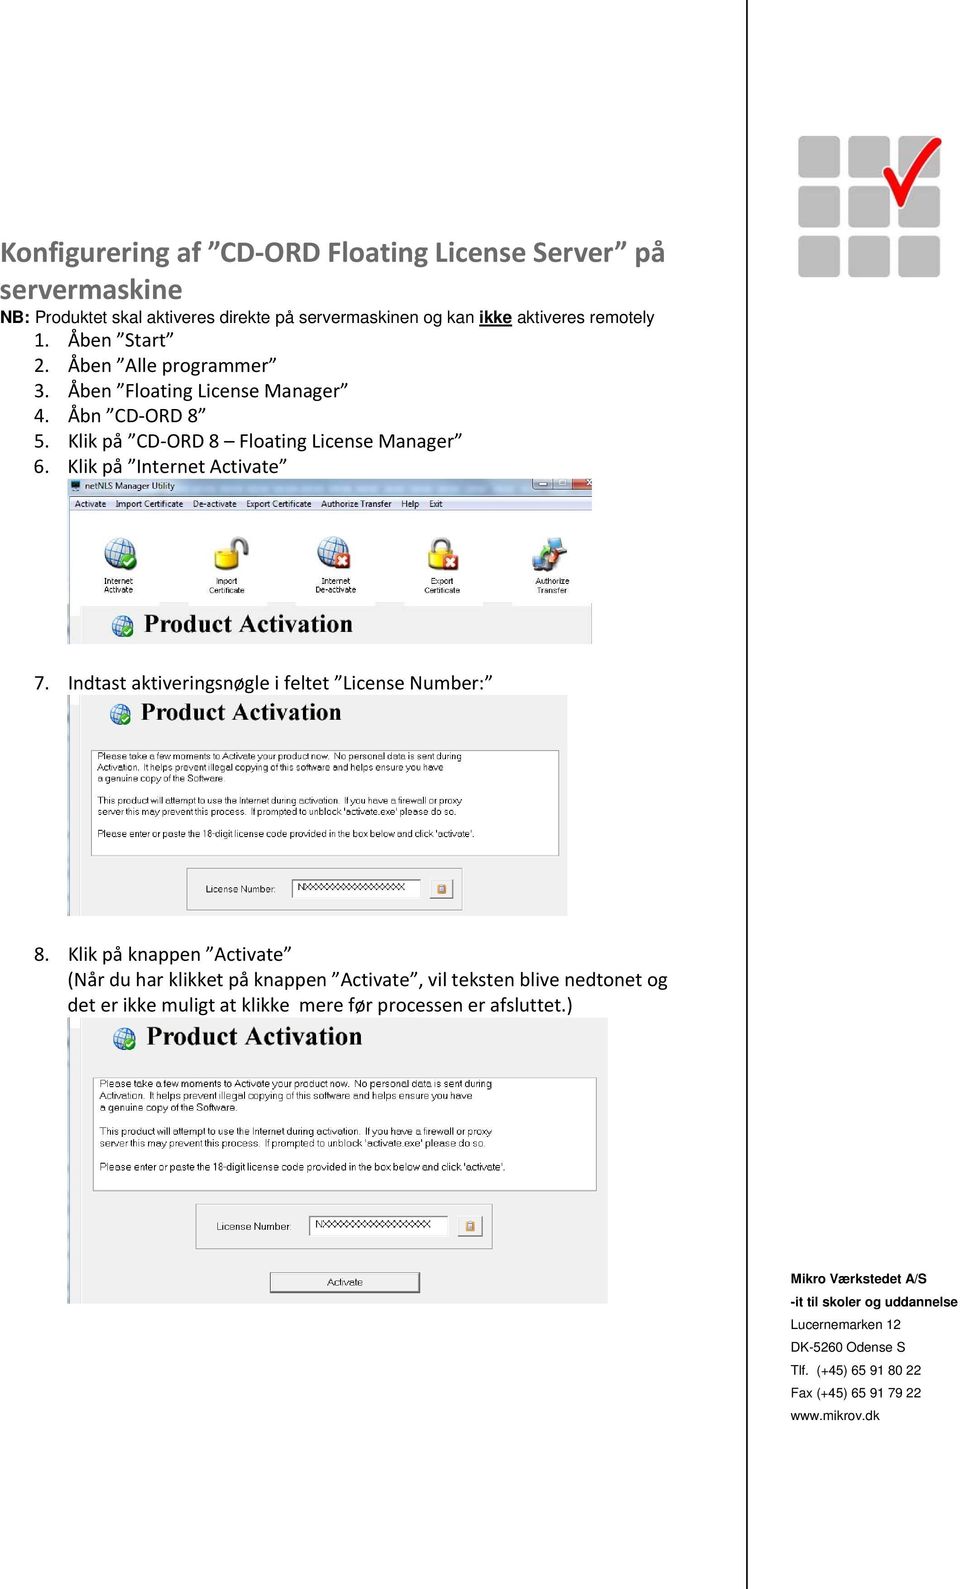 Klik på CD ORD 8 Floating License Manager 6. Klik på Internet Activate 7. Indtast aktiveringsnøgle i feltet License Number: 8.